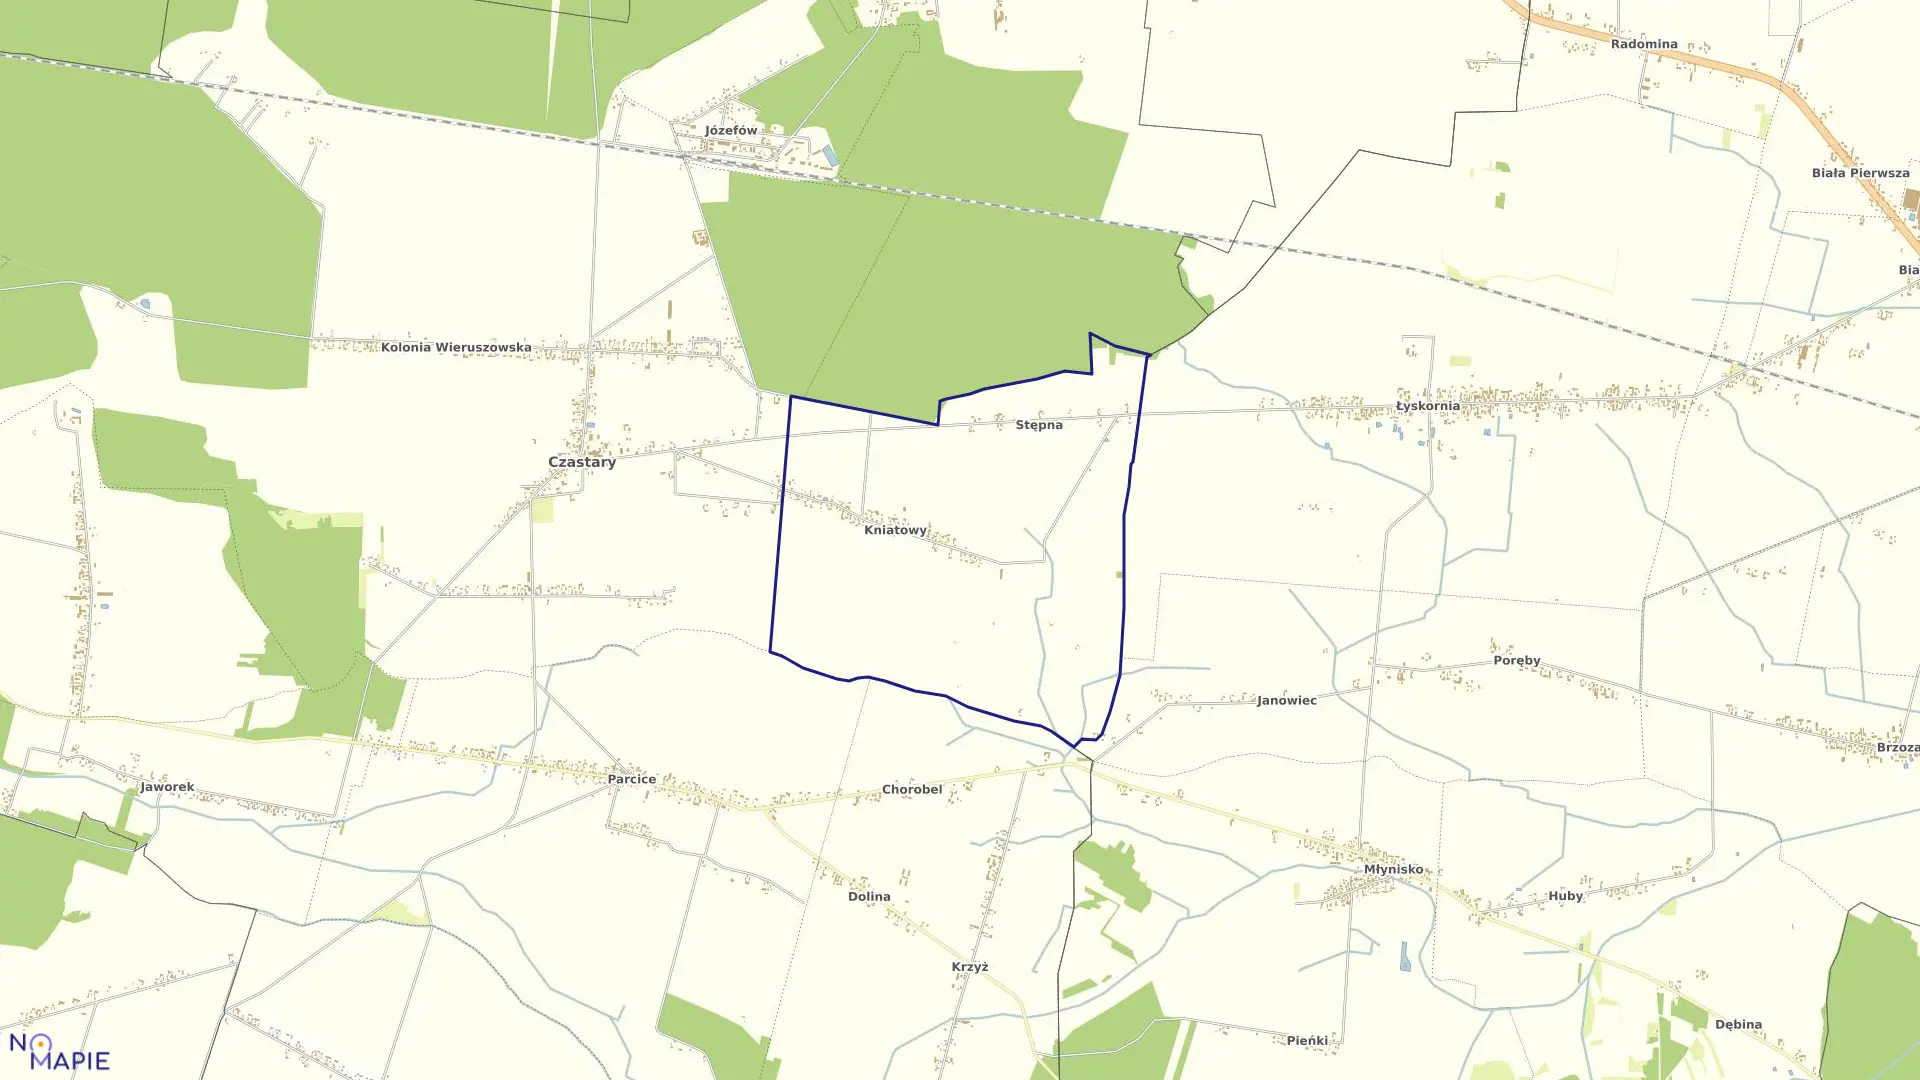 Mapa obrębu KNIATOWY w gminie Czastary